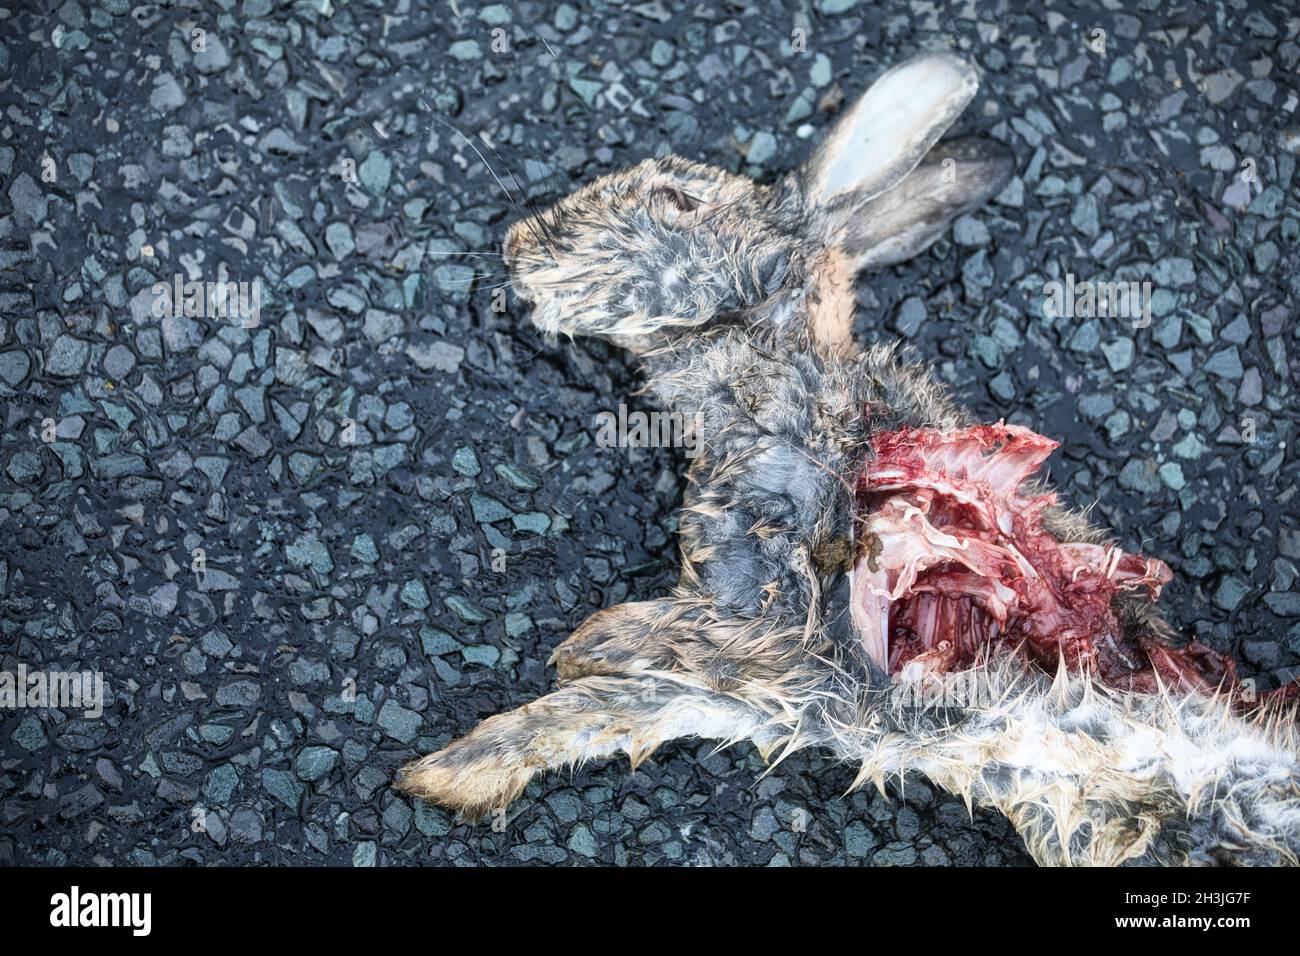 Directamente encima del cuerpo de conejo muerto golpeado por el coche, Richmondshire, North Yorkshire, Inglaterra Foto de stock